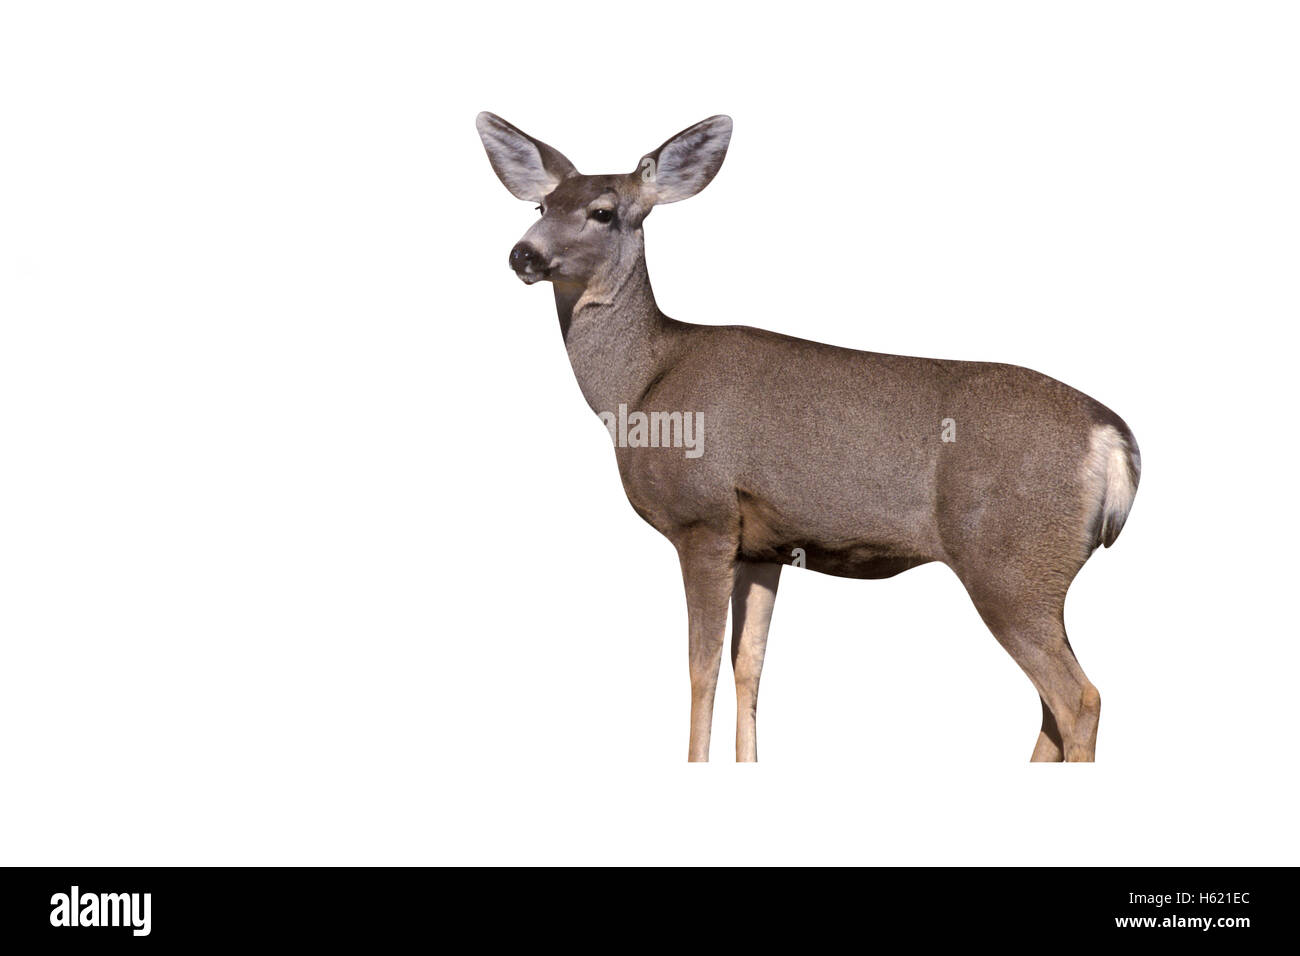 Mule deer, Odocoileus hemionus, single mammal, New Mexico, USA Stock Photo